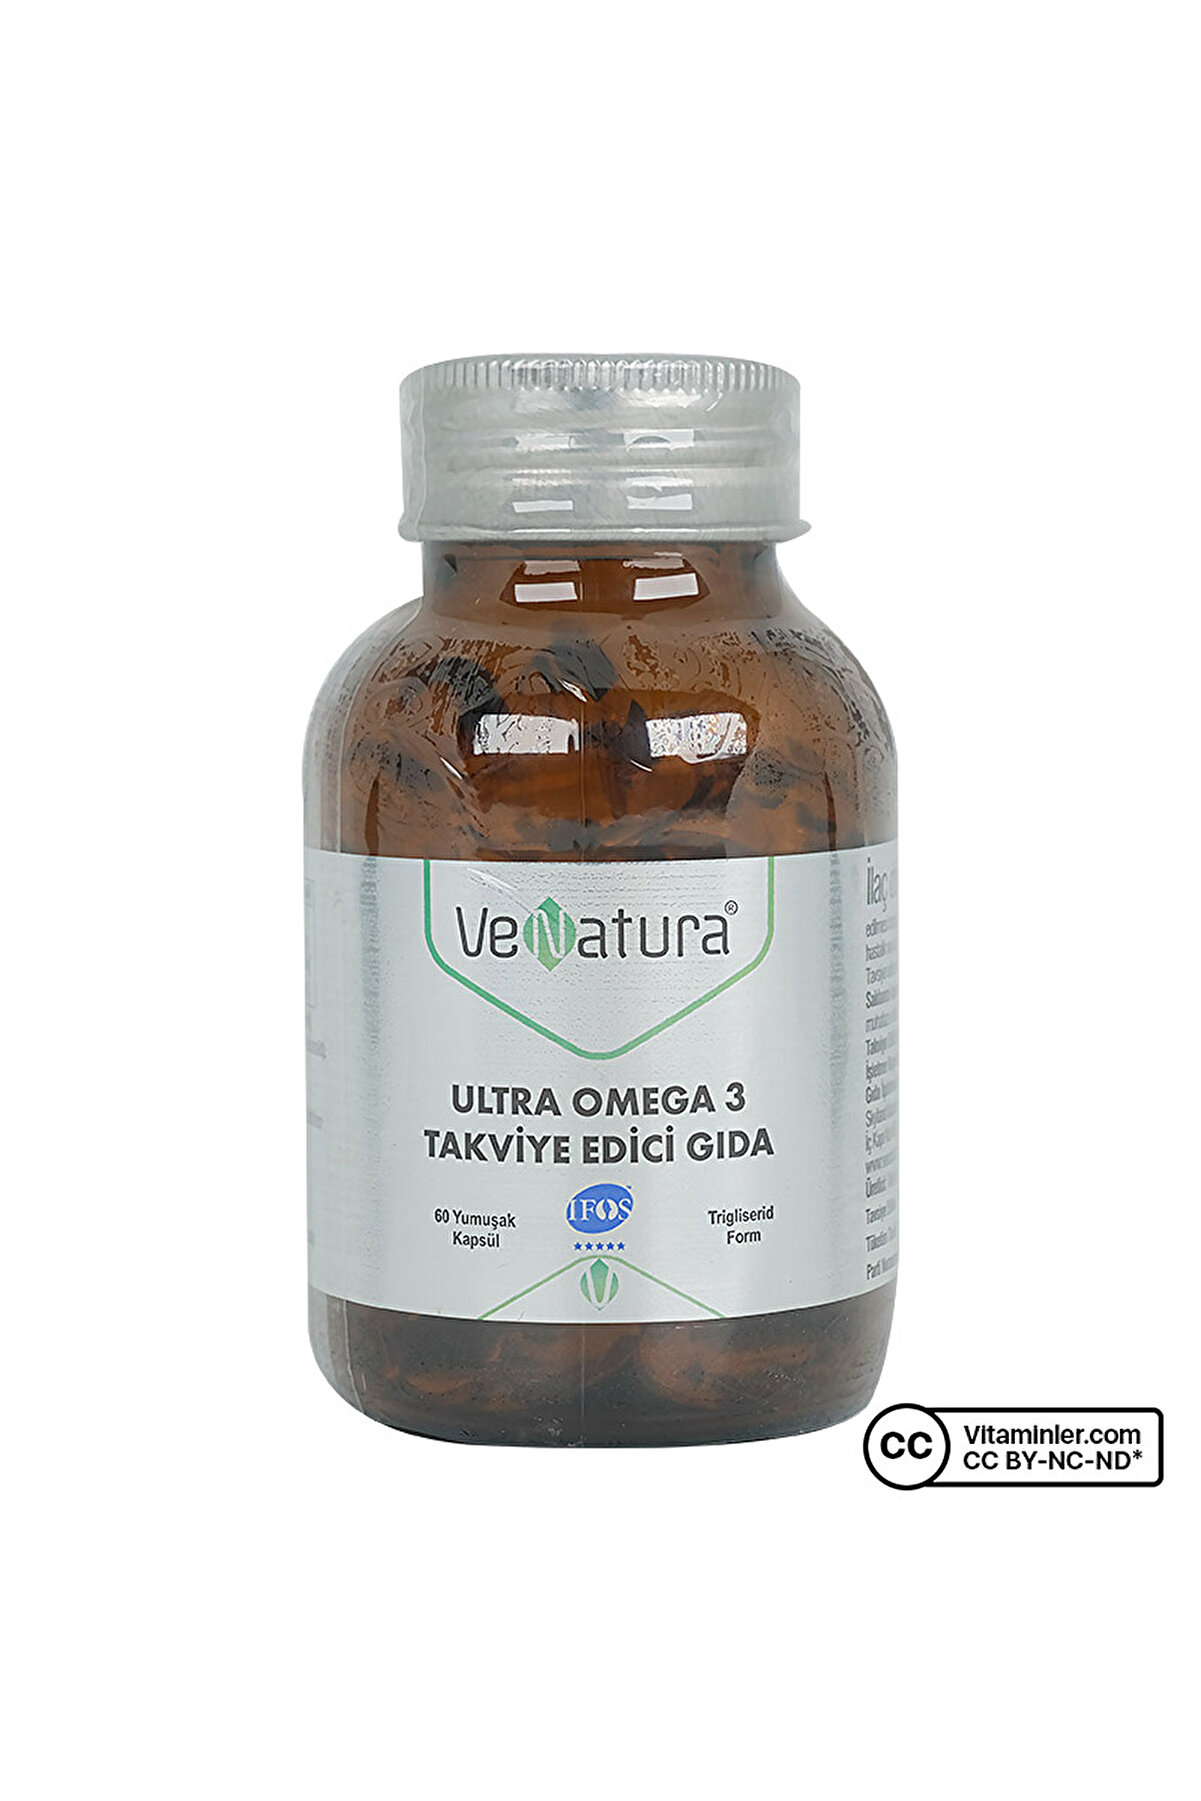 Venatura Ultra Omega 3 Takviye Edici Gıda 60 Yumuşak Kapsül